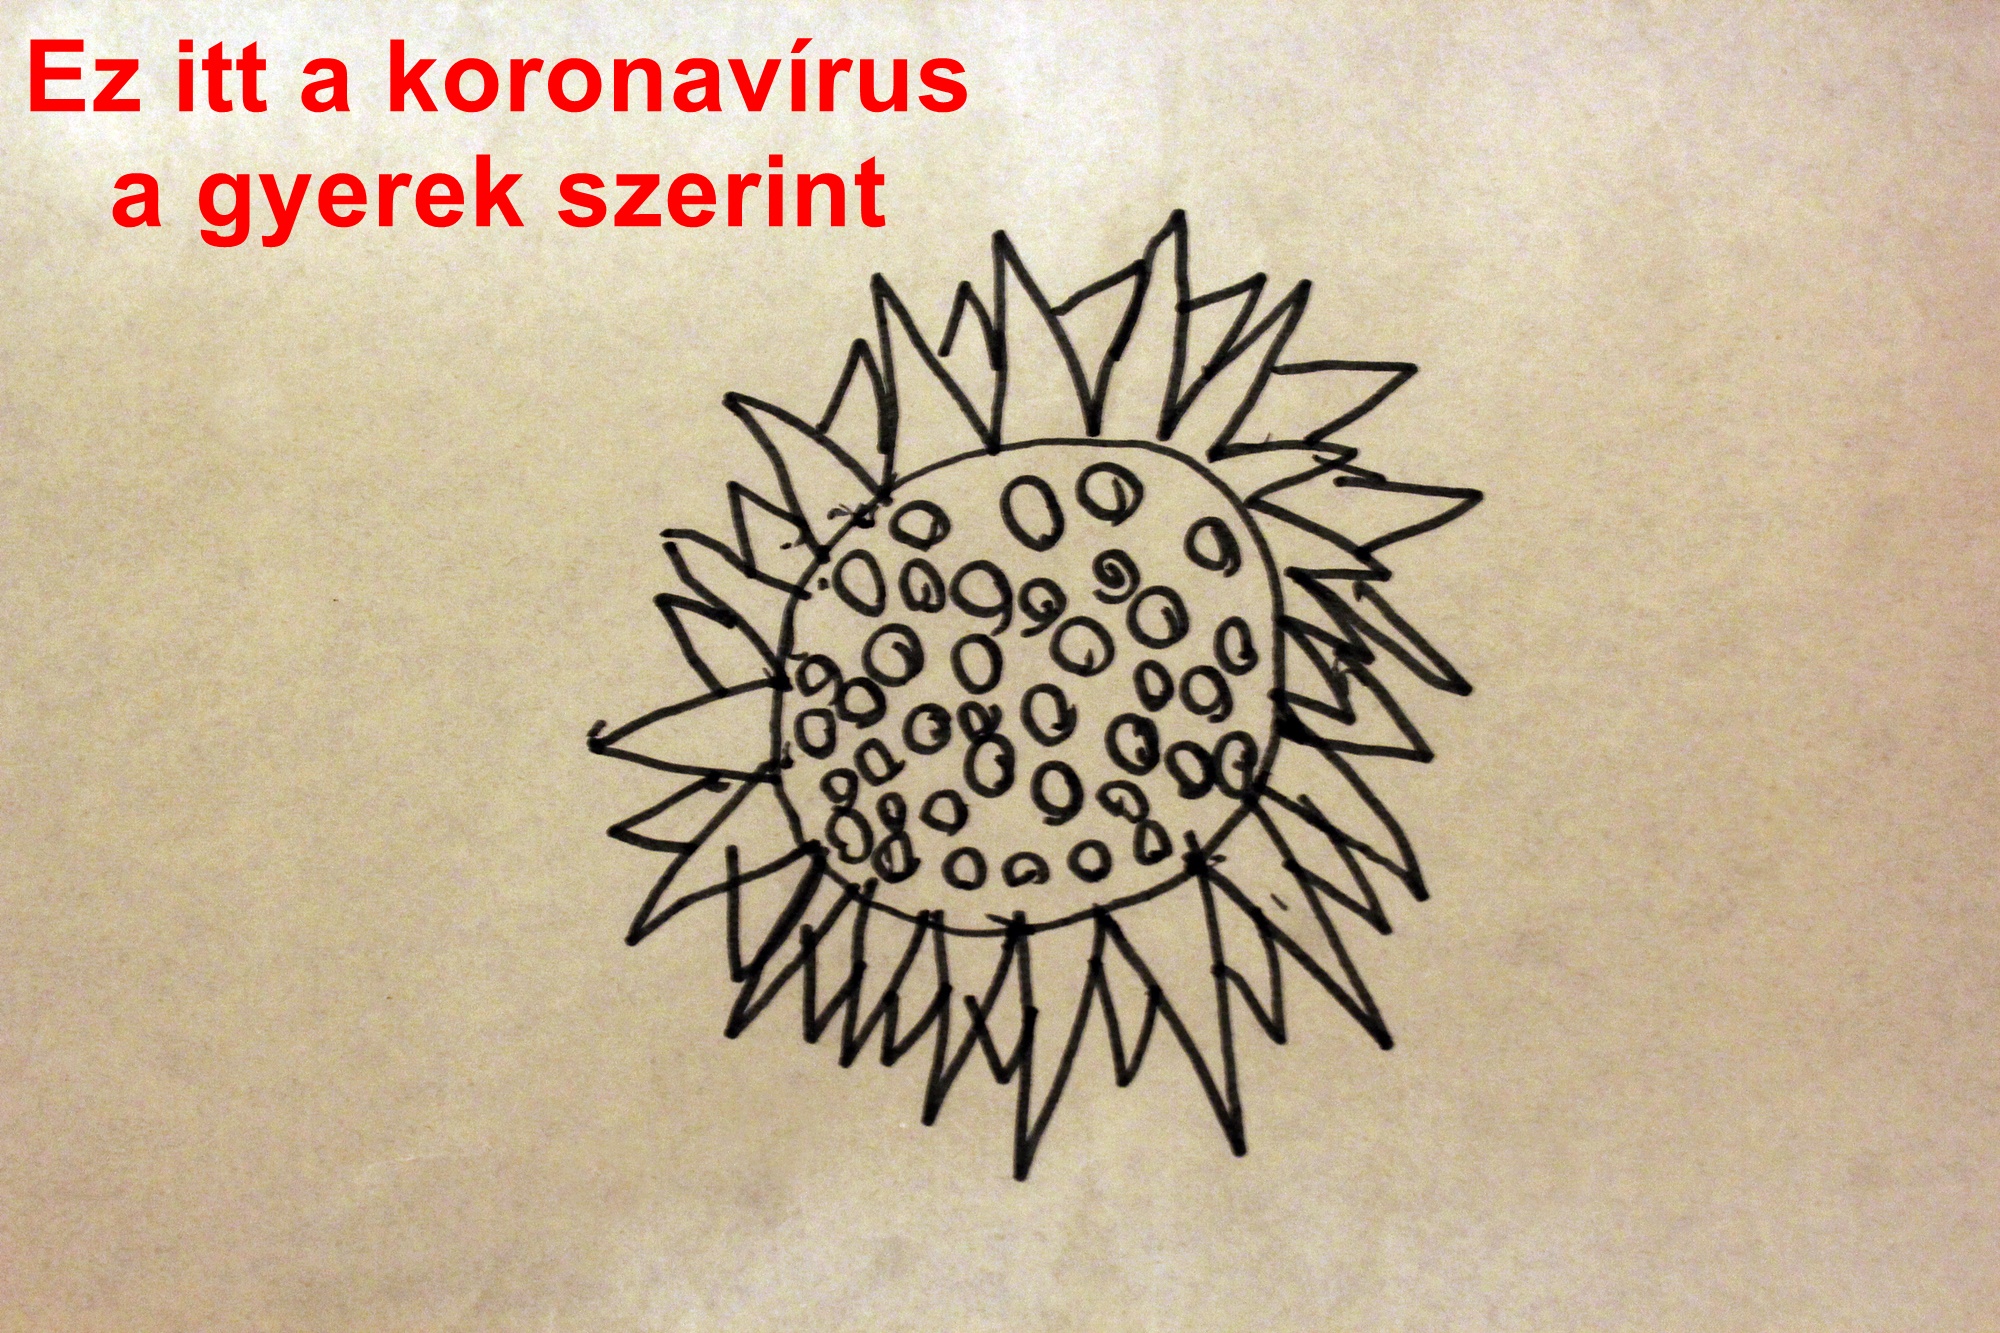 Ez itt a koronavírus a gyerek szerint